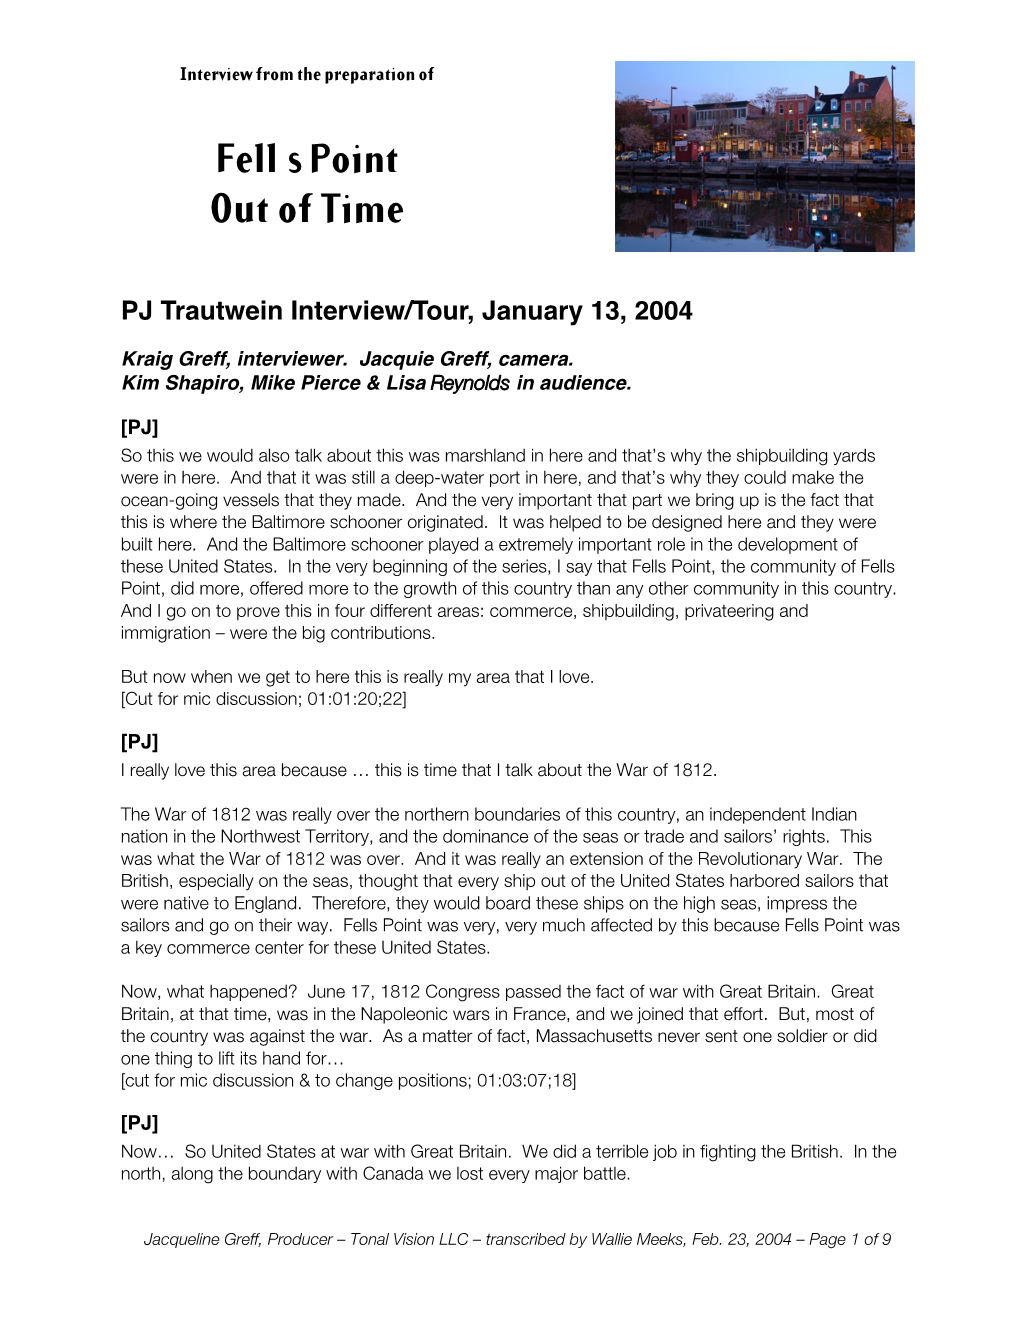 PJ Trautwein Interview, 1/13/2004